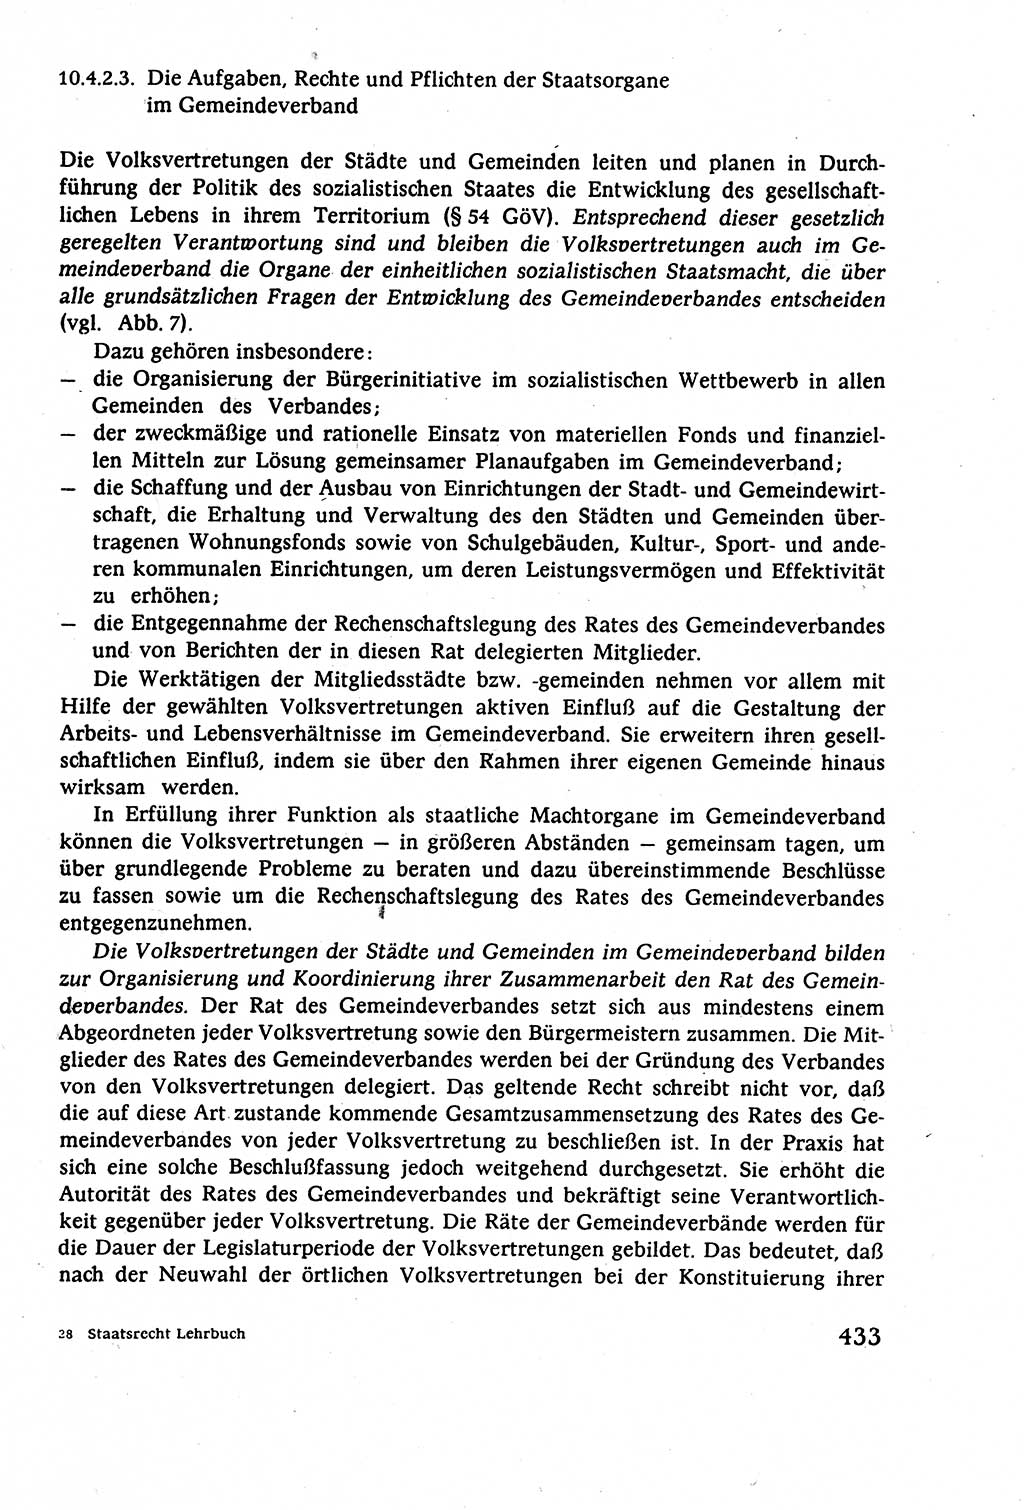 Staatsrecht der DDR (Deutsche Demokratische Republik), Lehrbuch 1977, Seite 433 (St.-R. DDR Lb. 1977, S. 433)